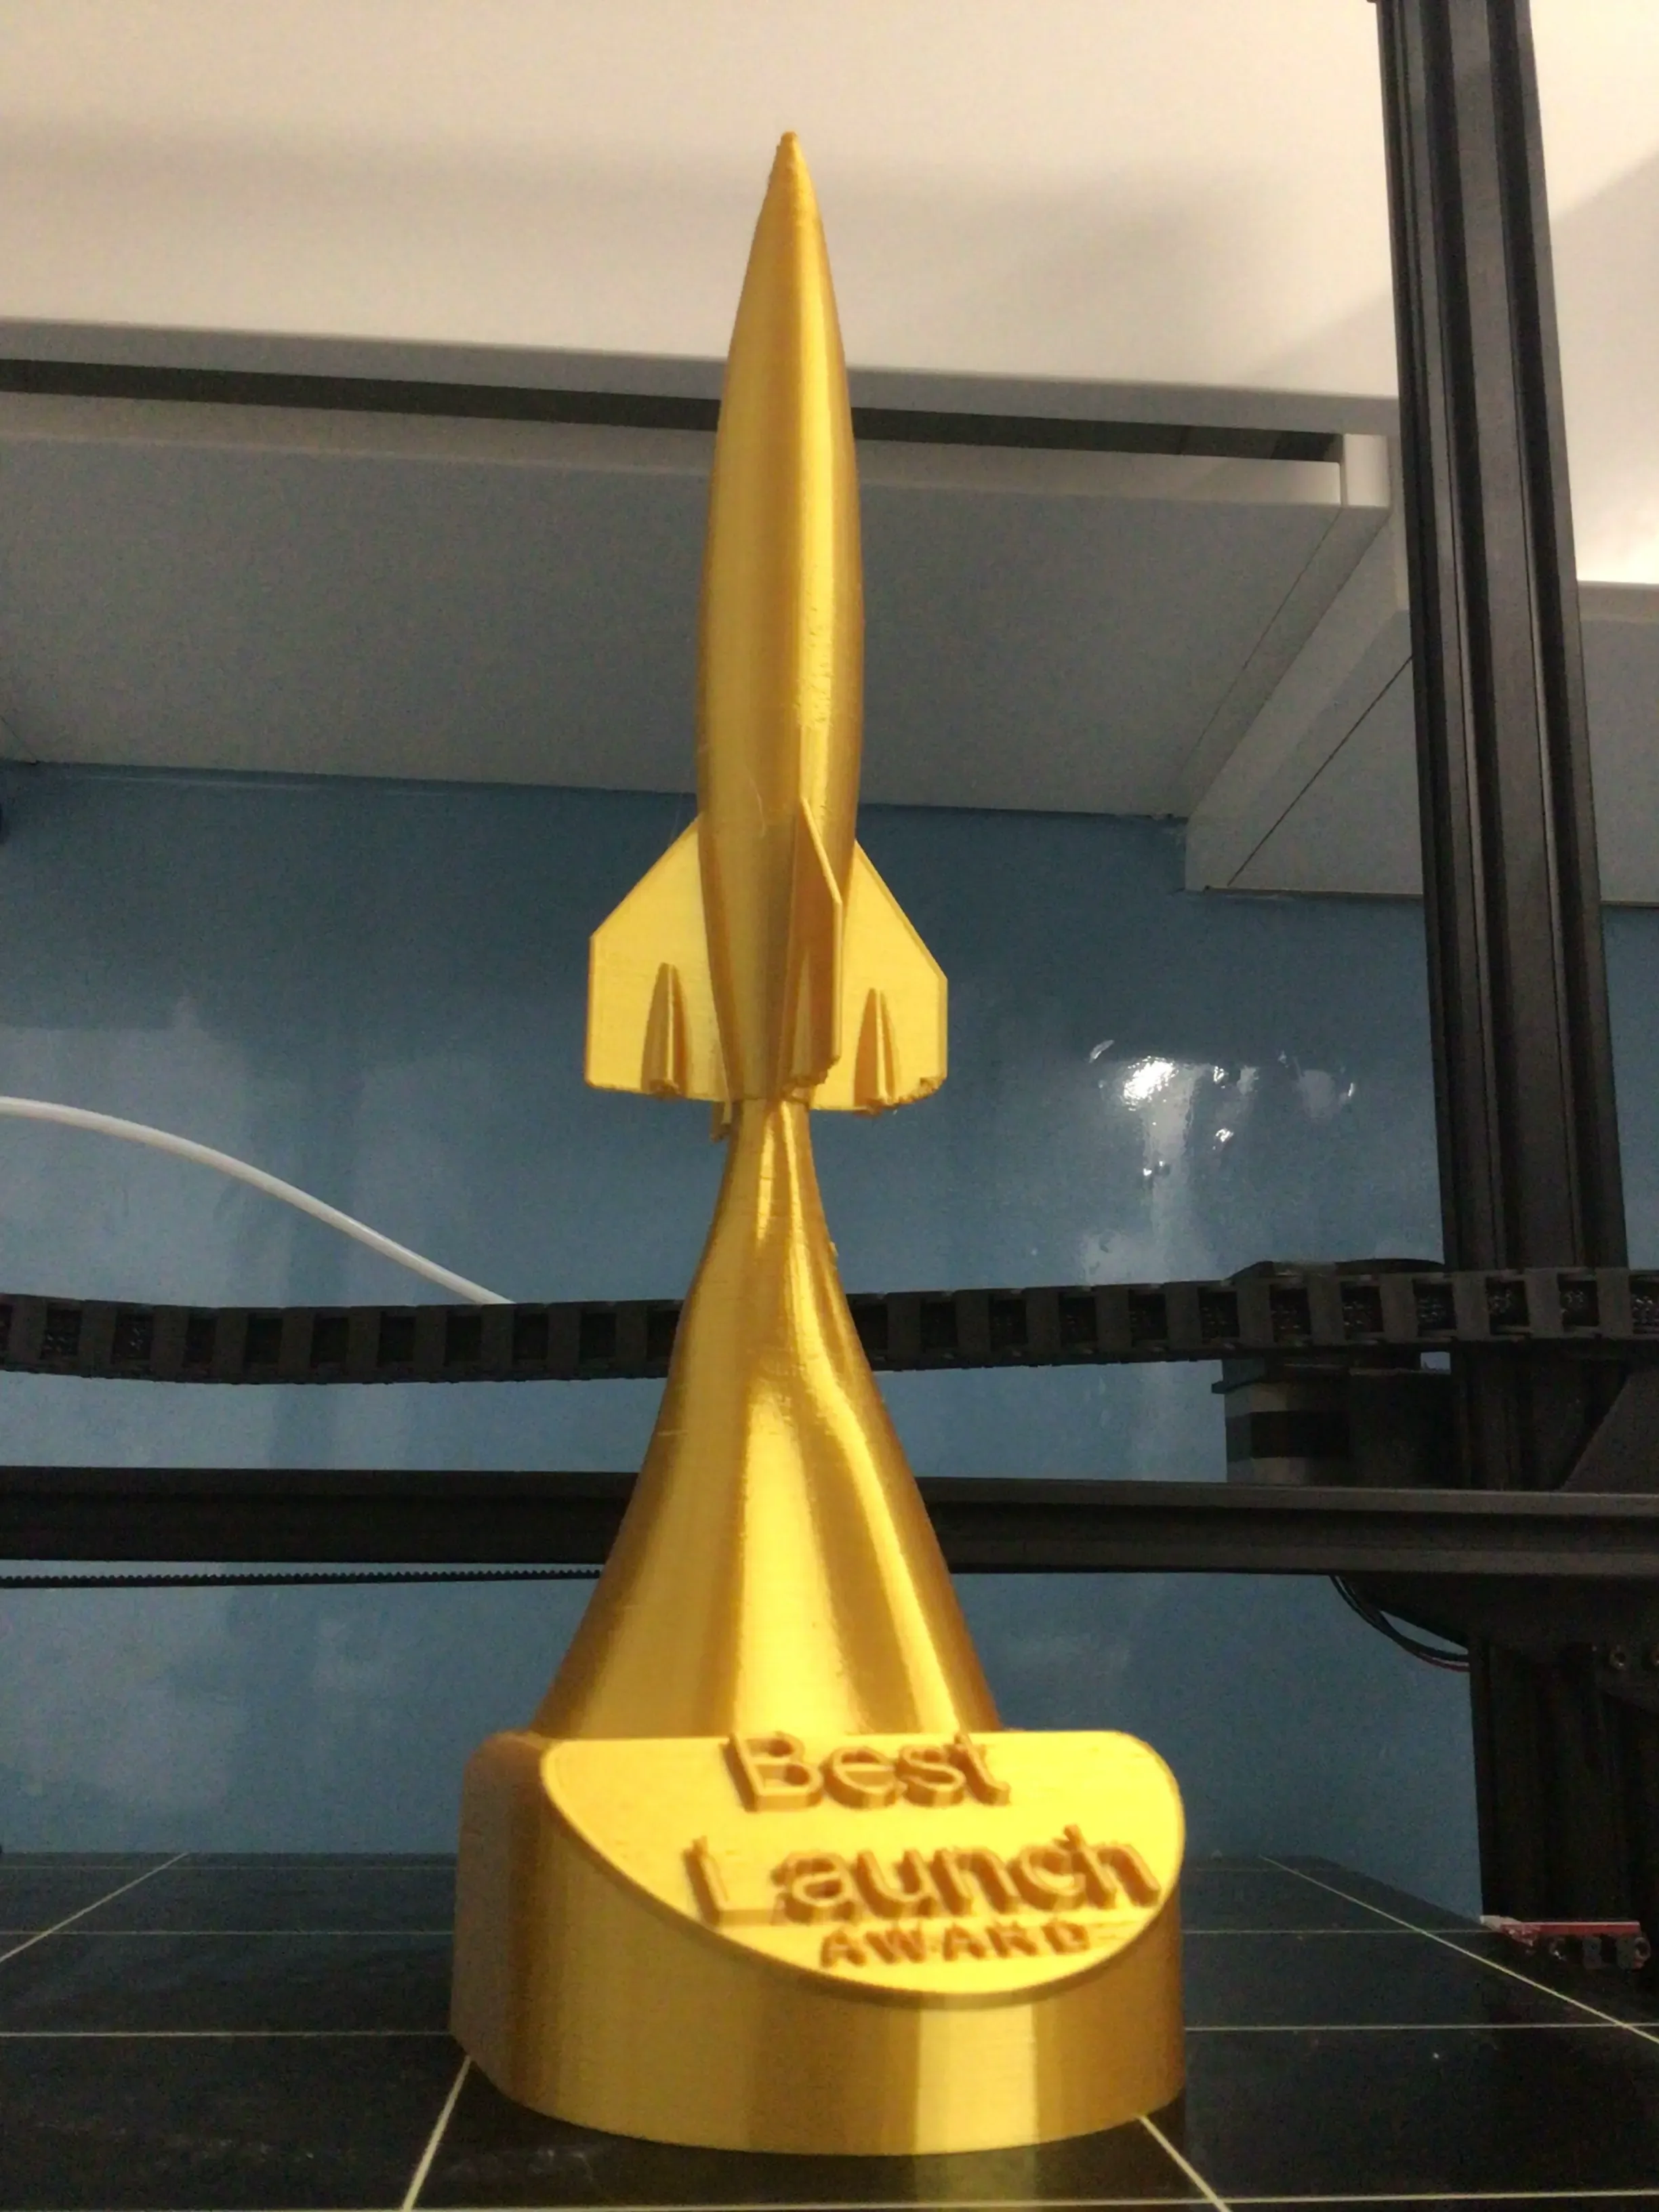 90% OFF Best Launch Award